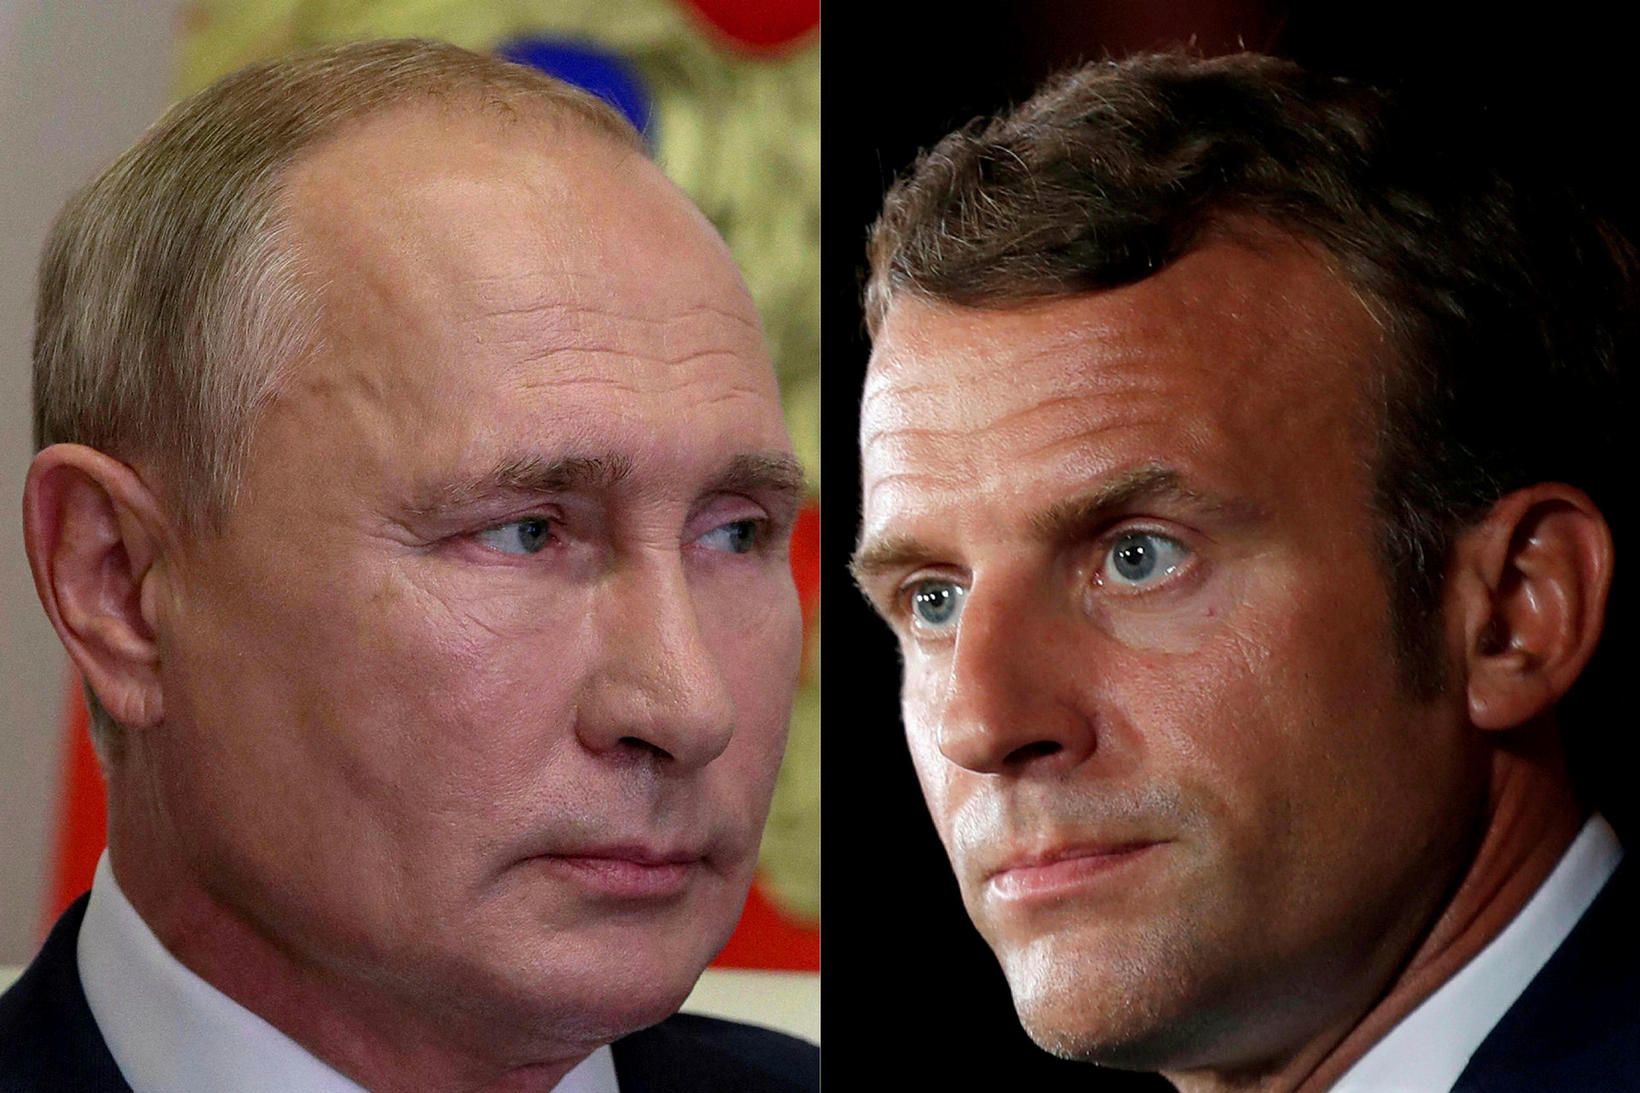 Vladimír Pútín og Emmanuel Macron.